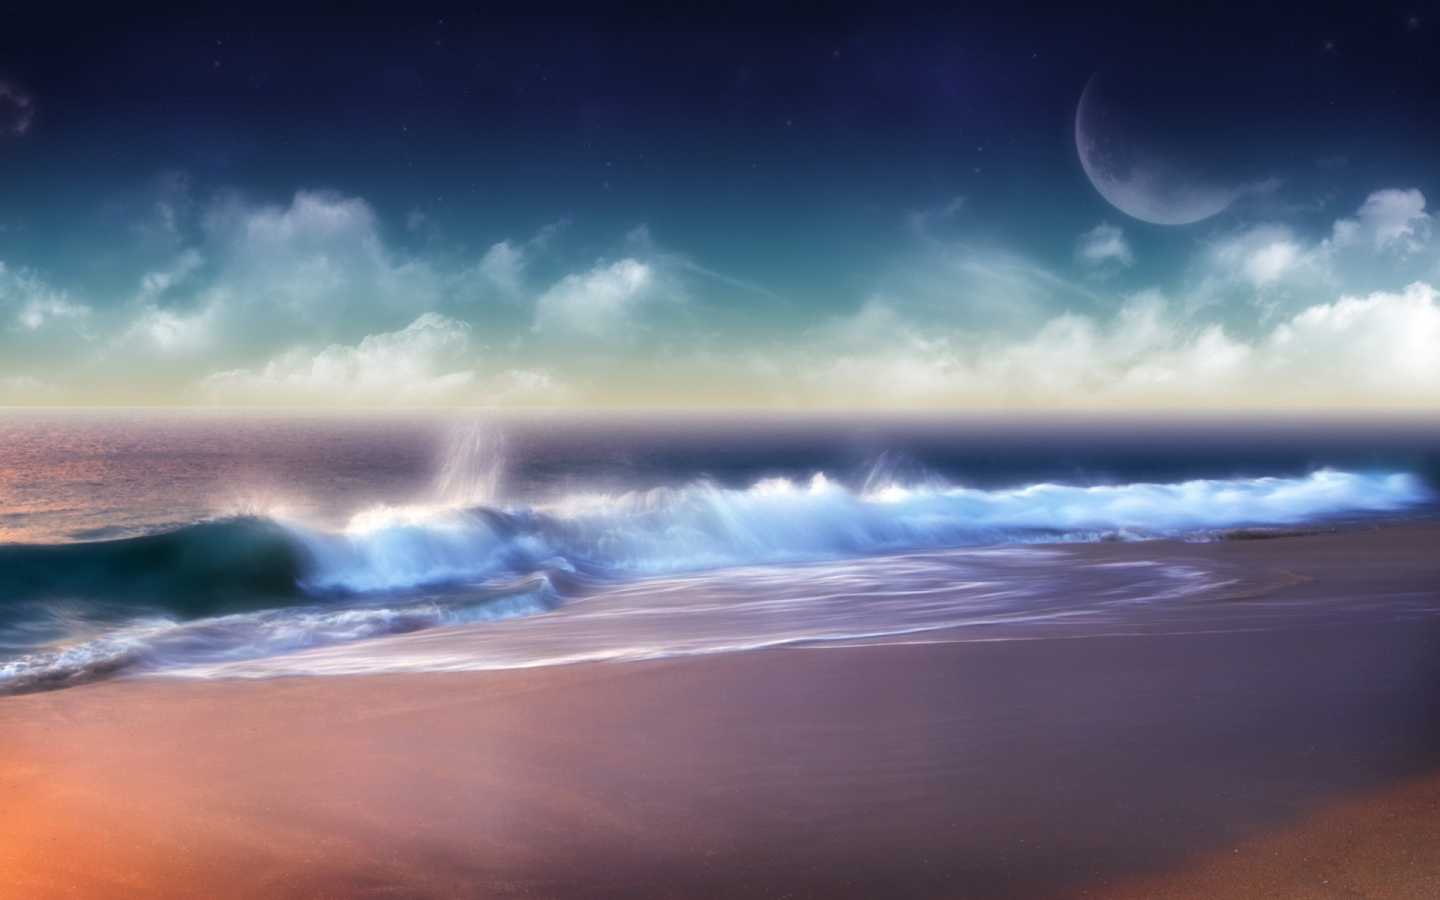 Superb Ocean Sunset for 1440 x 900 widescreen resolution